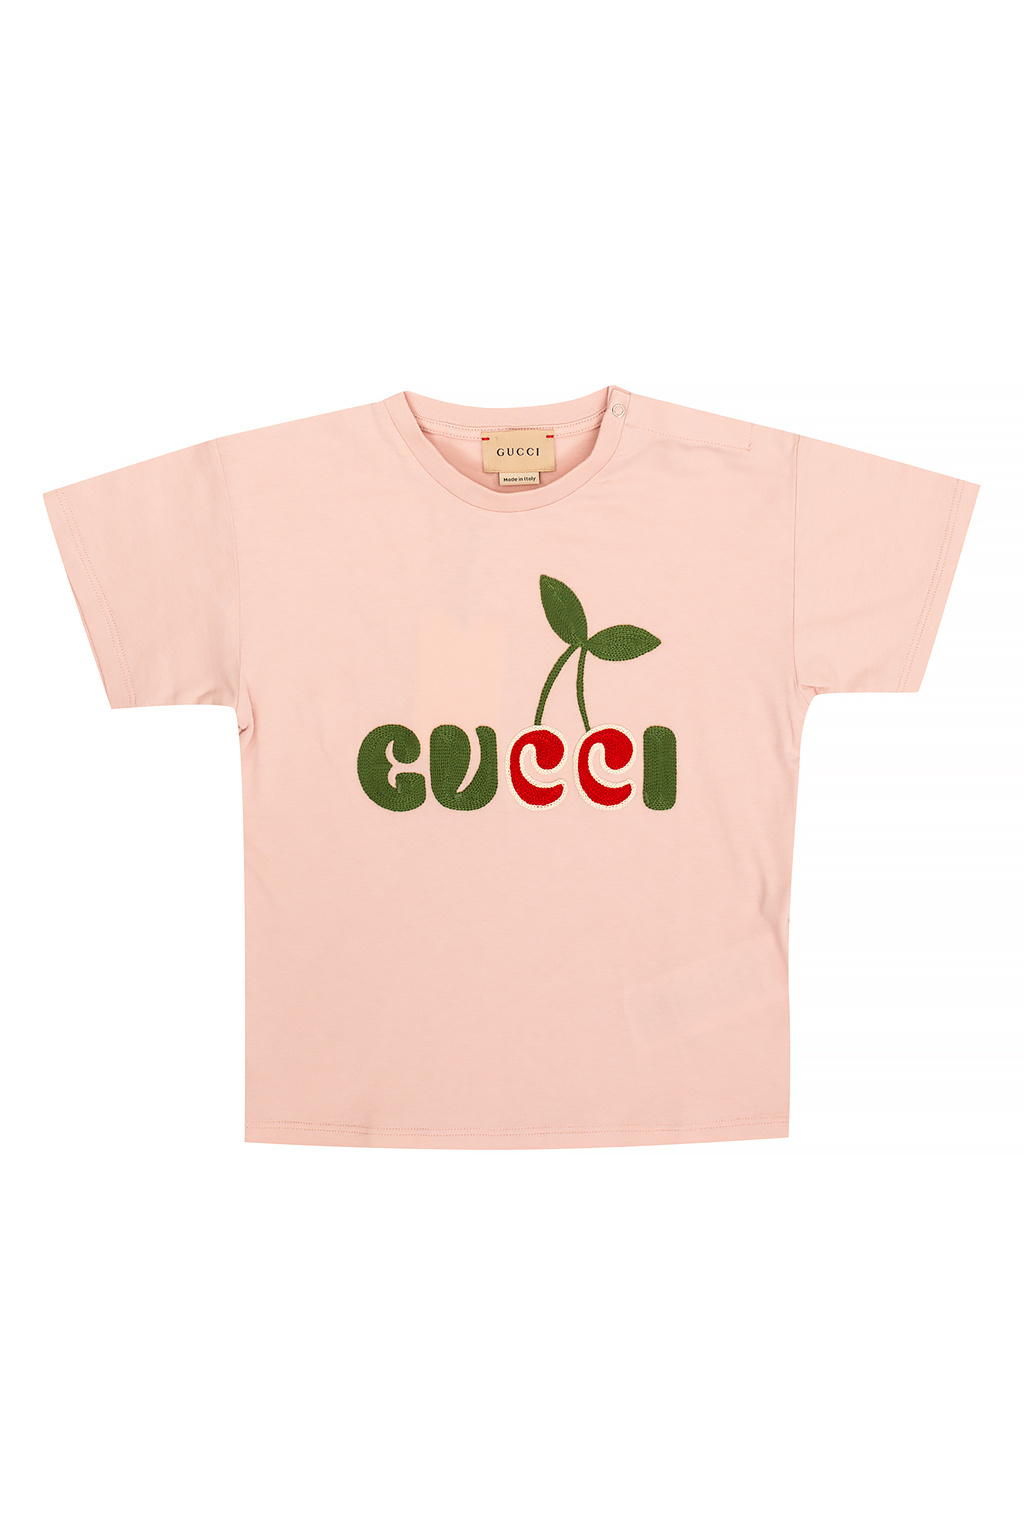 Gucci Kids Gucci Hawaii print T-shirt